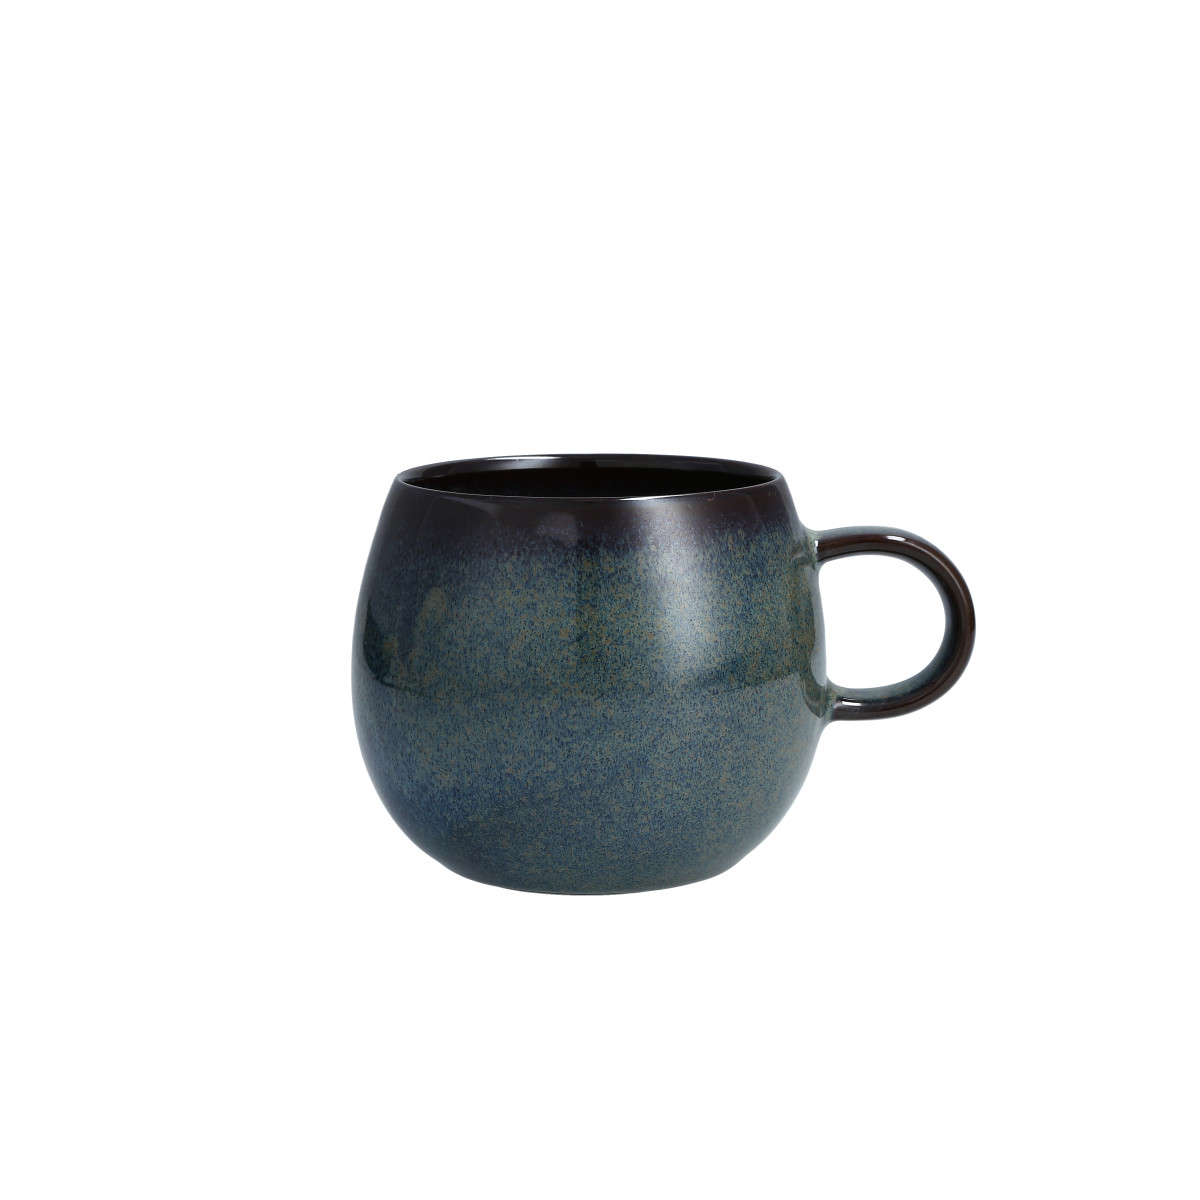 Northern Lights Coffee Mug 16.5oz